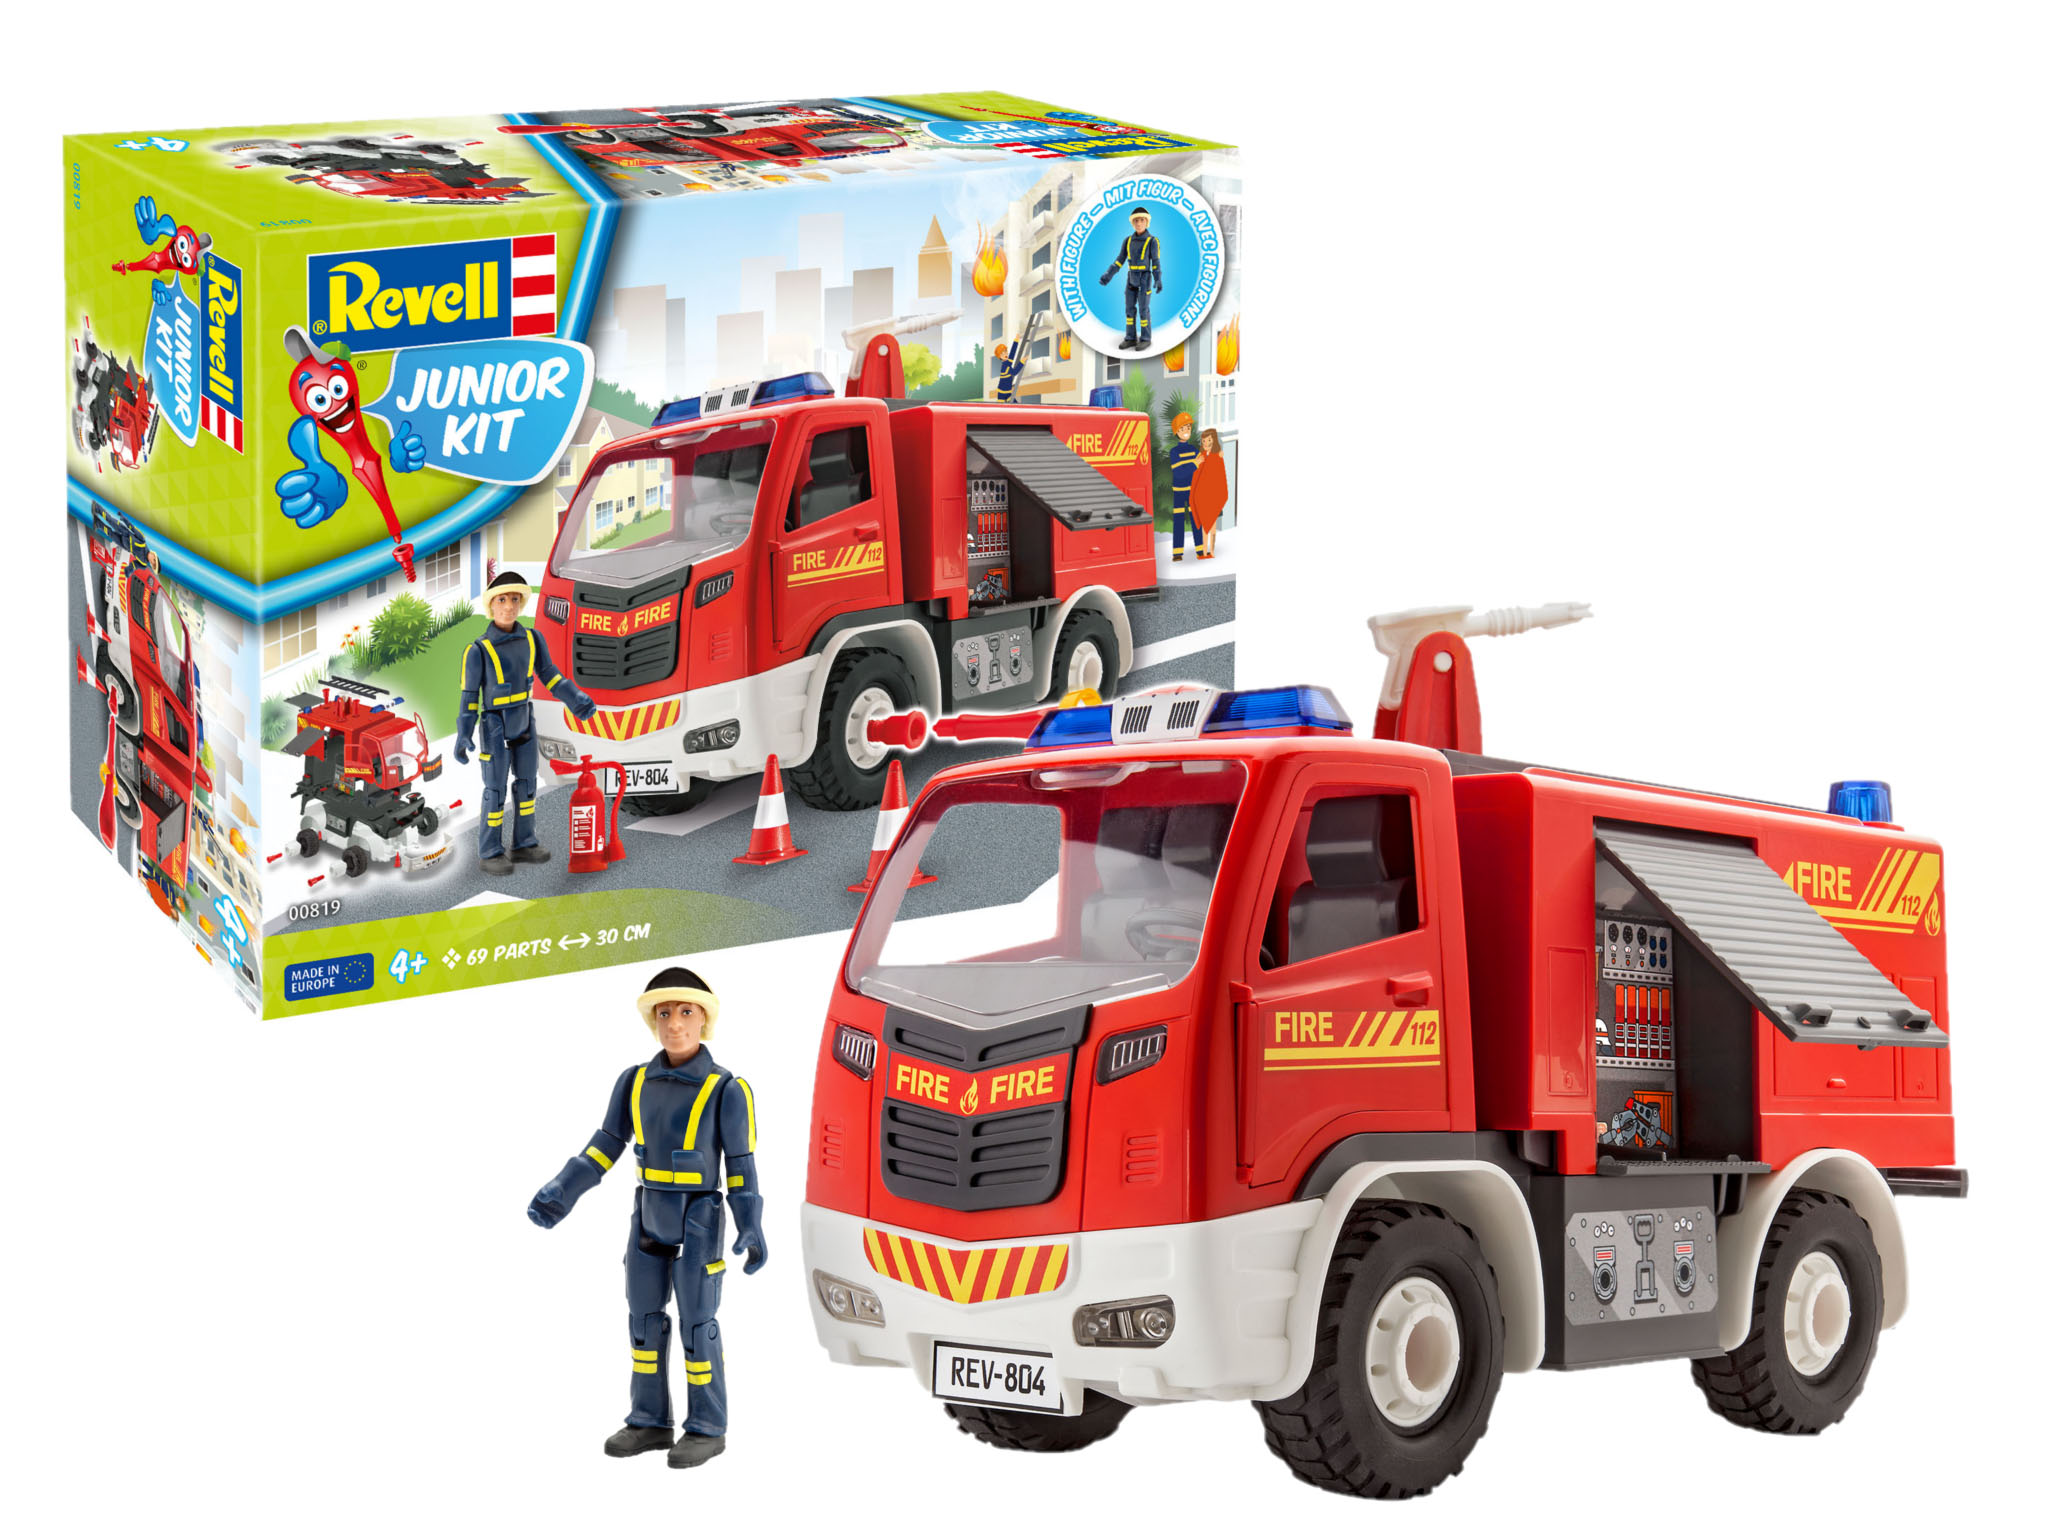 Revell Junior Kit Fire Truck with figure in 1:20 bouwpakket